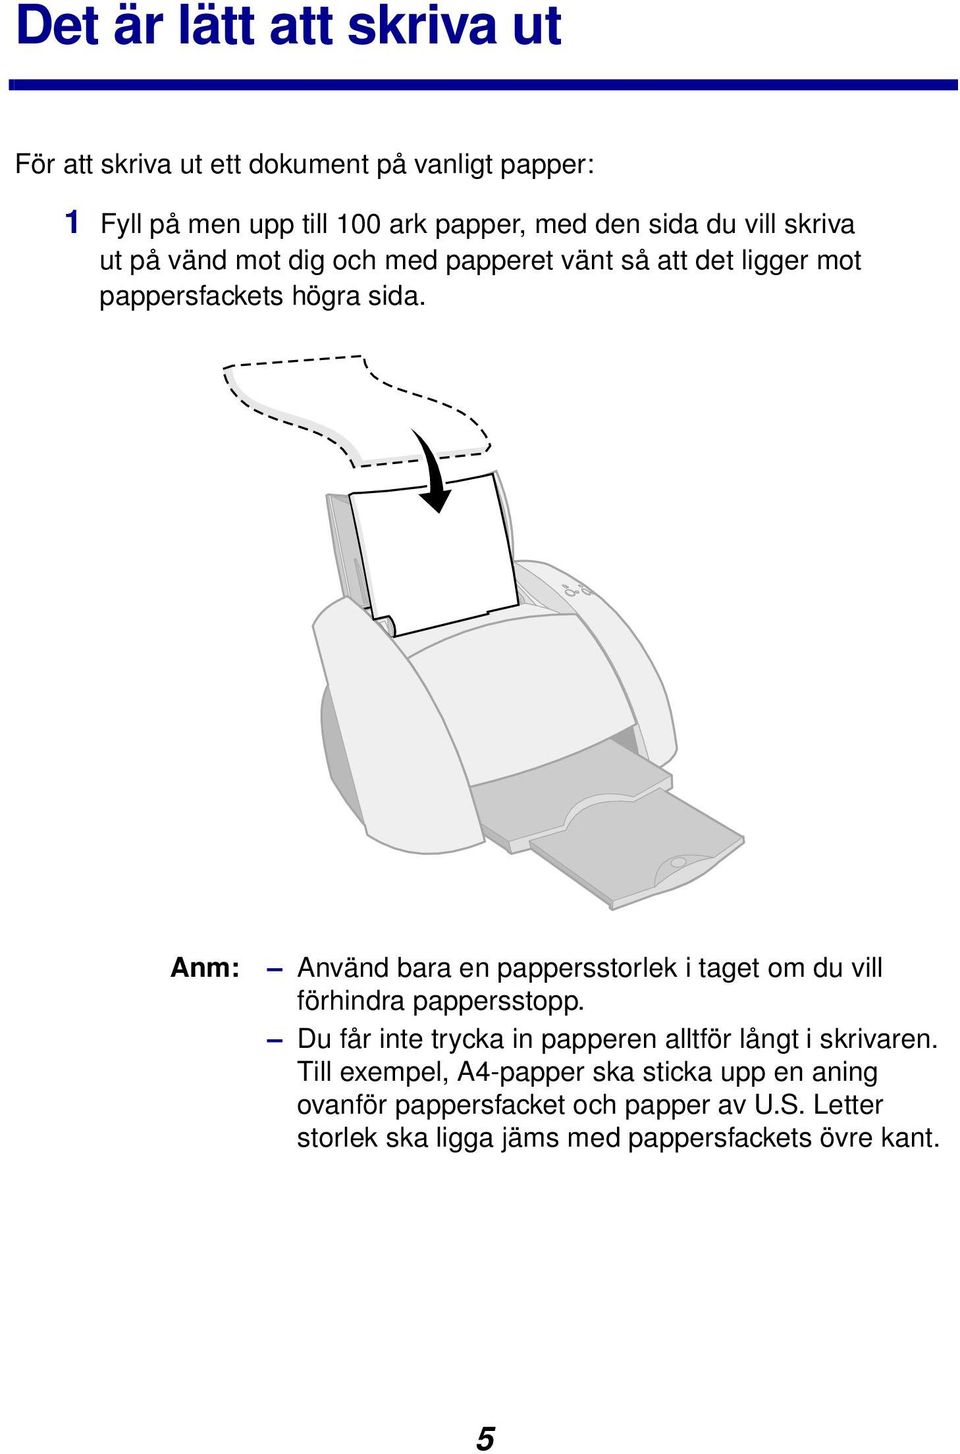 Anm: Använd bara en pappersstorlek i taget om du vill förhindra pappersstopp.